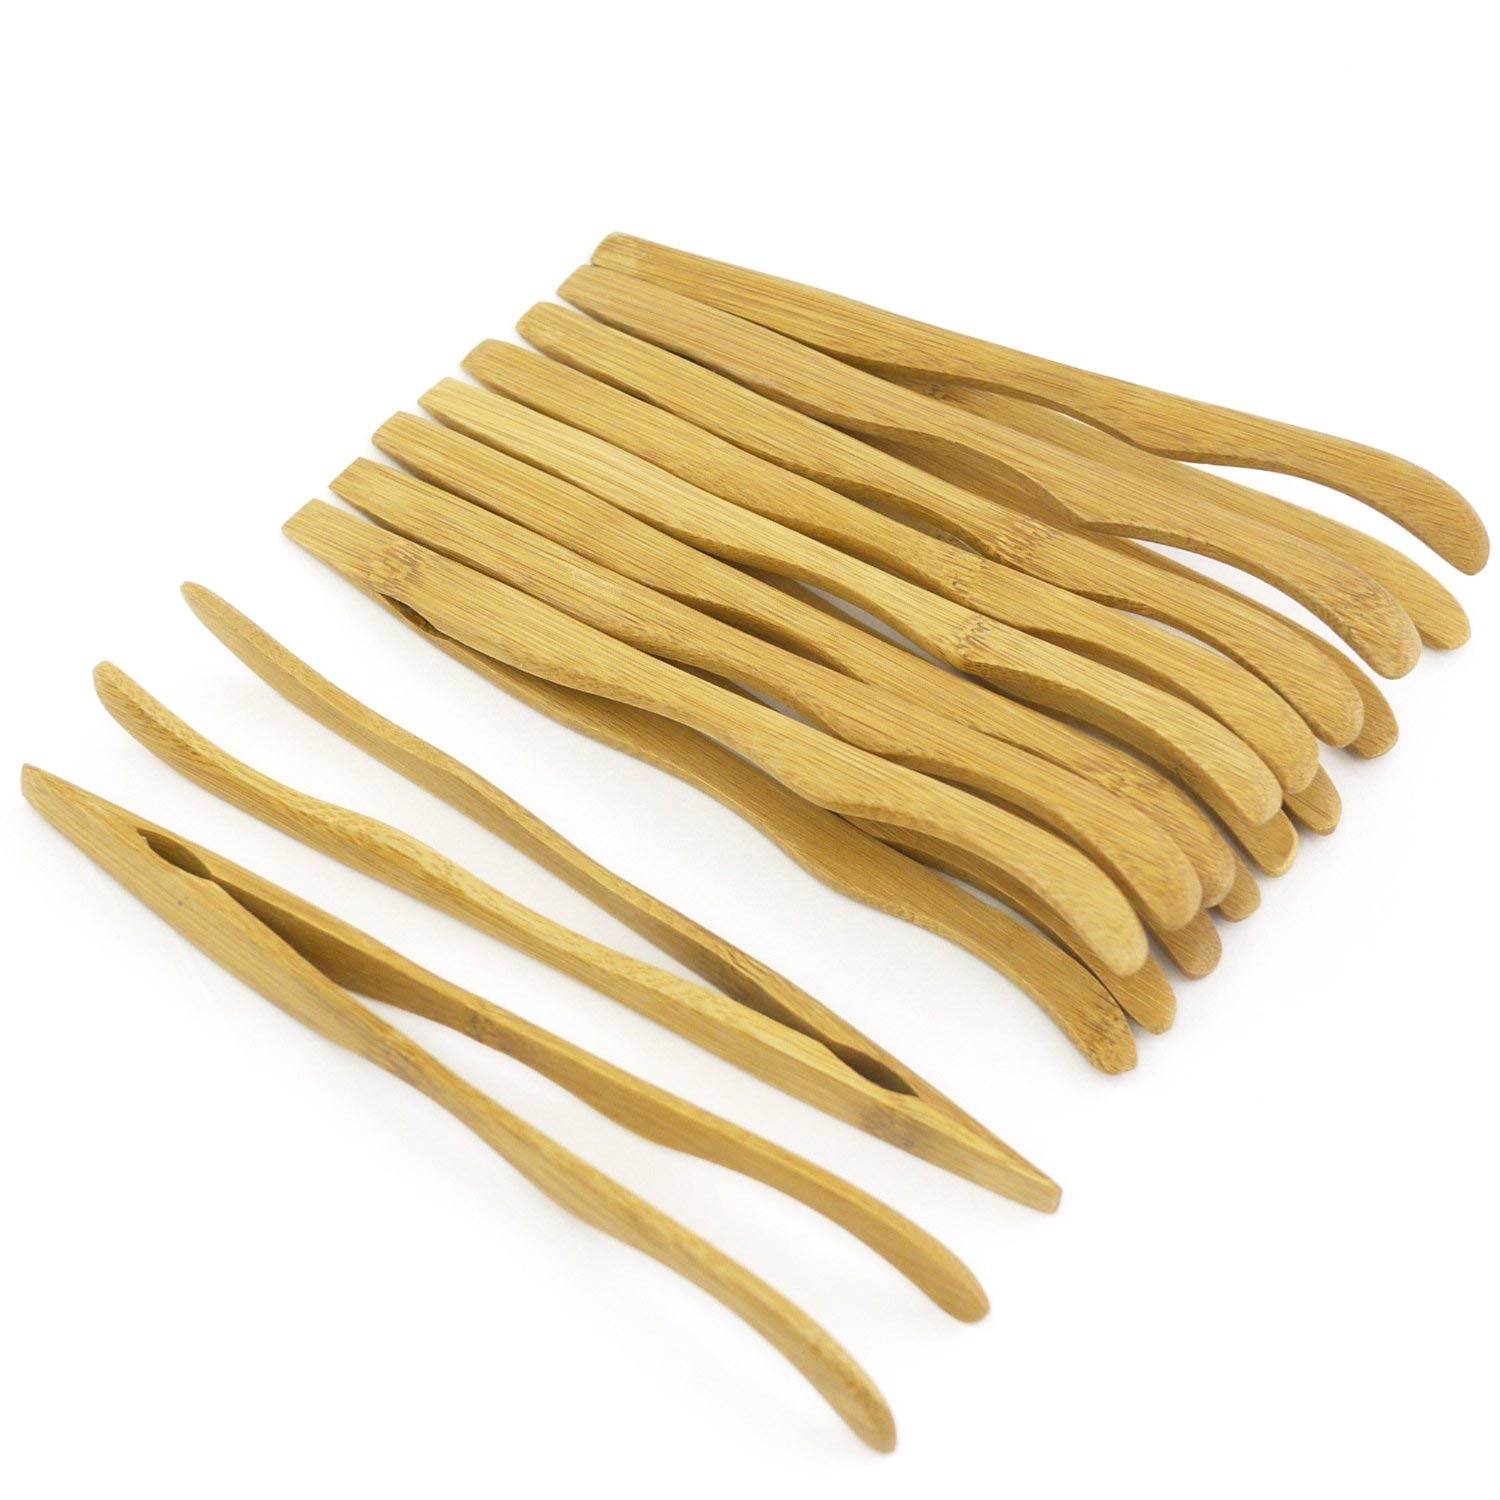 16cm genanvendelige bambustænger, buede arme, træfarve  - 10 stykker - skåltænger